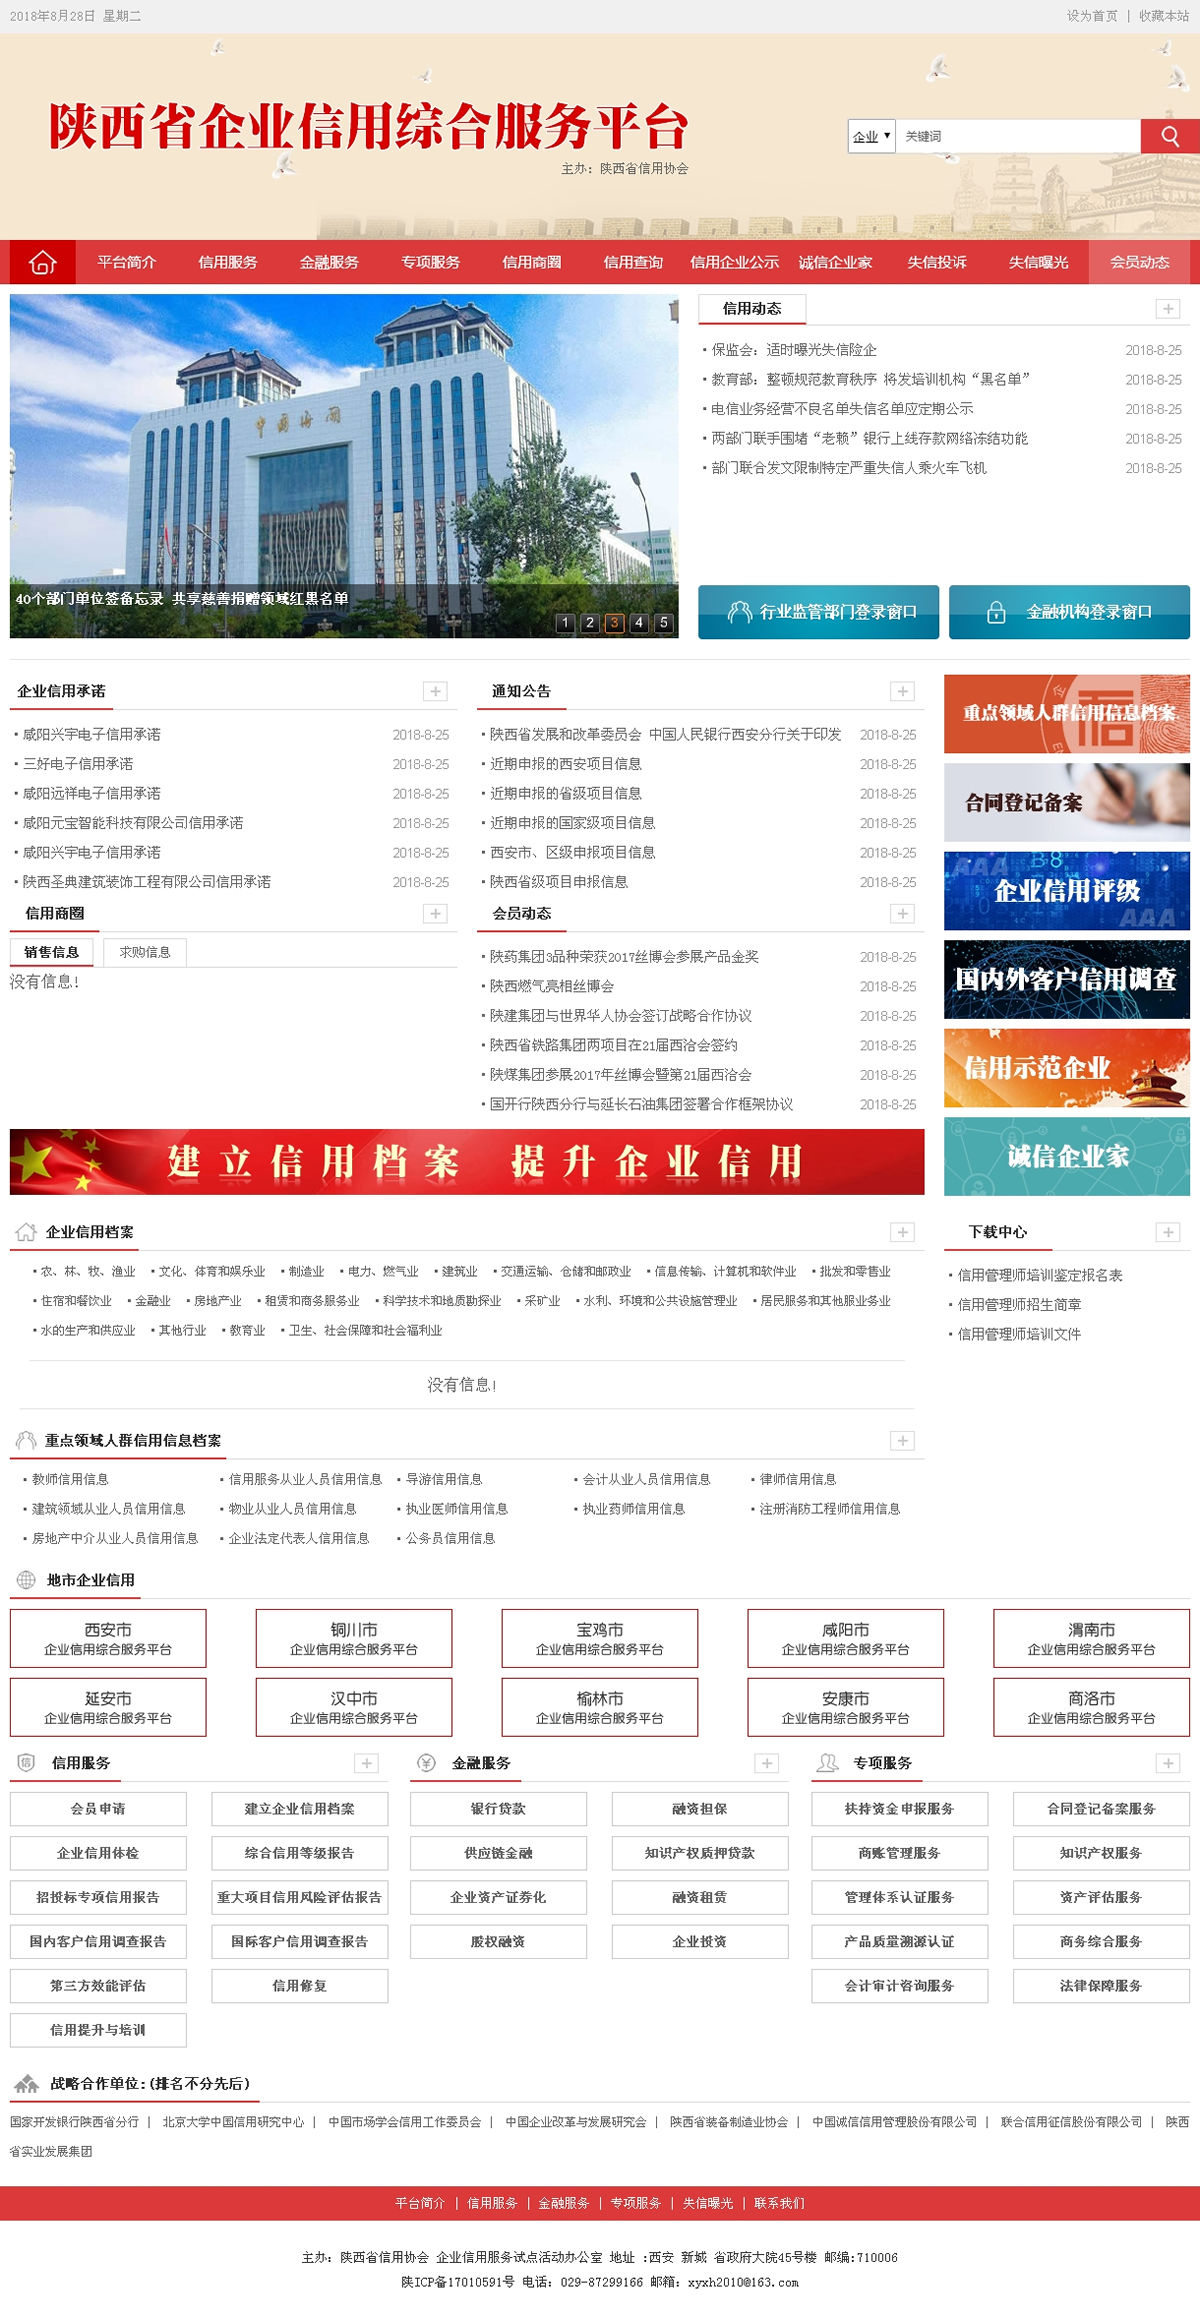 陕西省企业信用综合服务平台